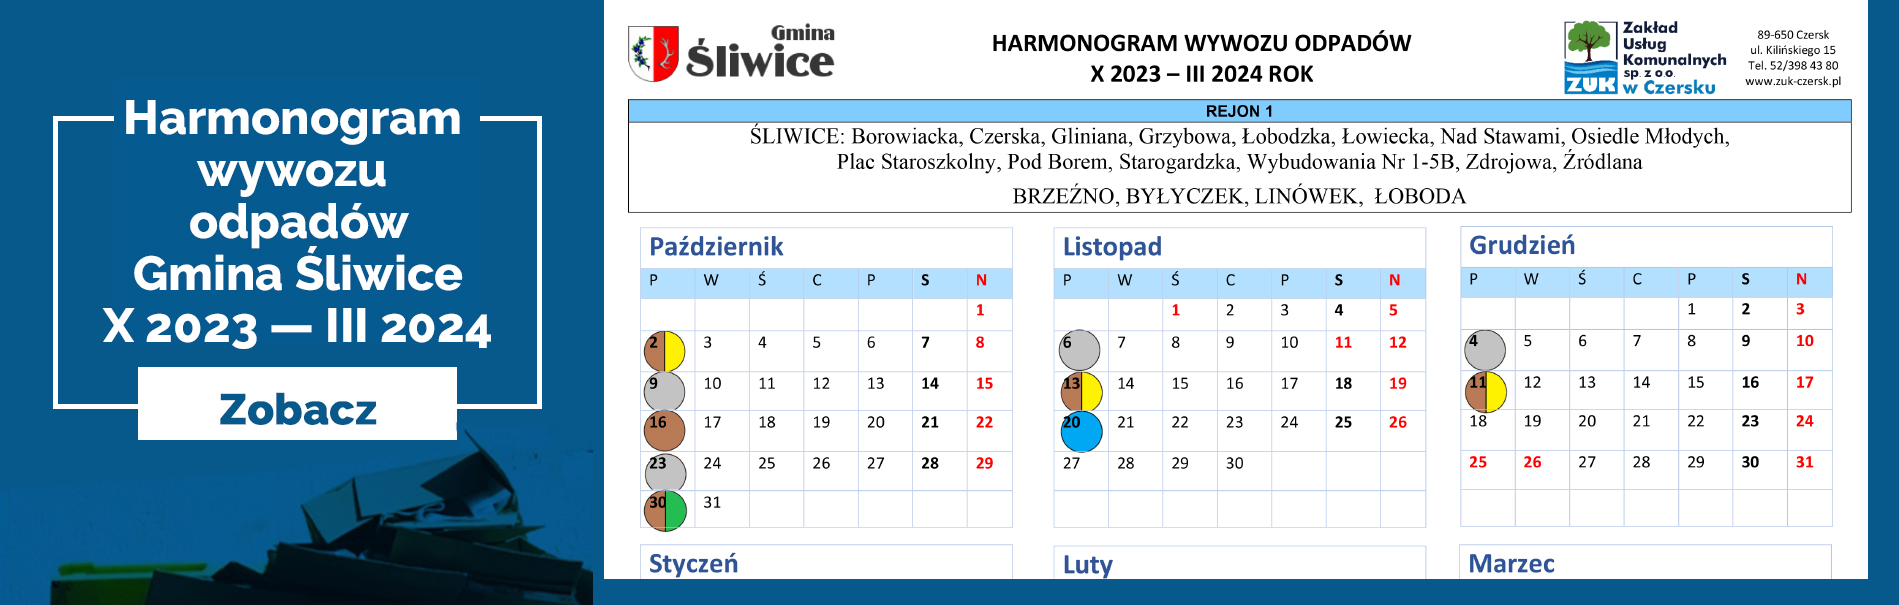 Harmonogram Wywozu Odpadów Komunalnych Gmina Śliwice 01.10.2023 - 31.03.2024